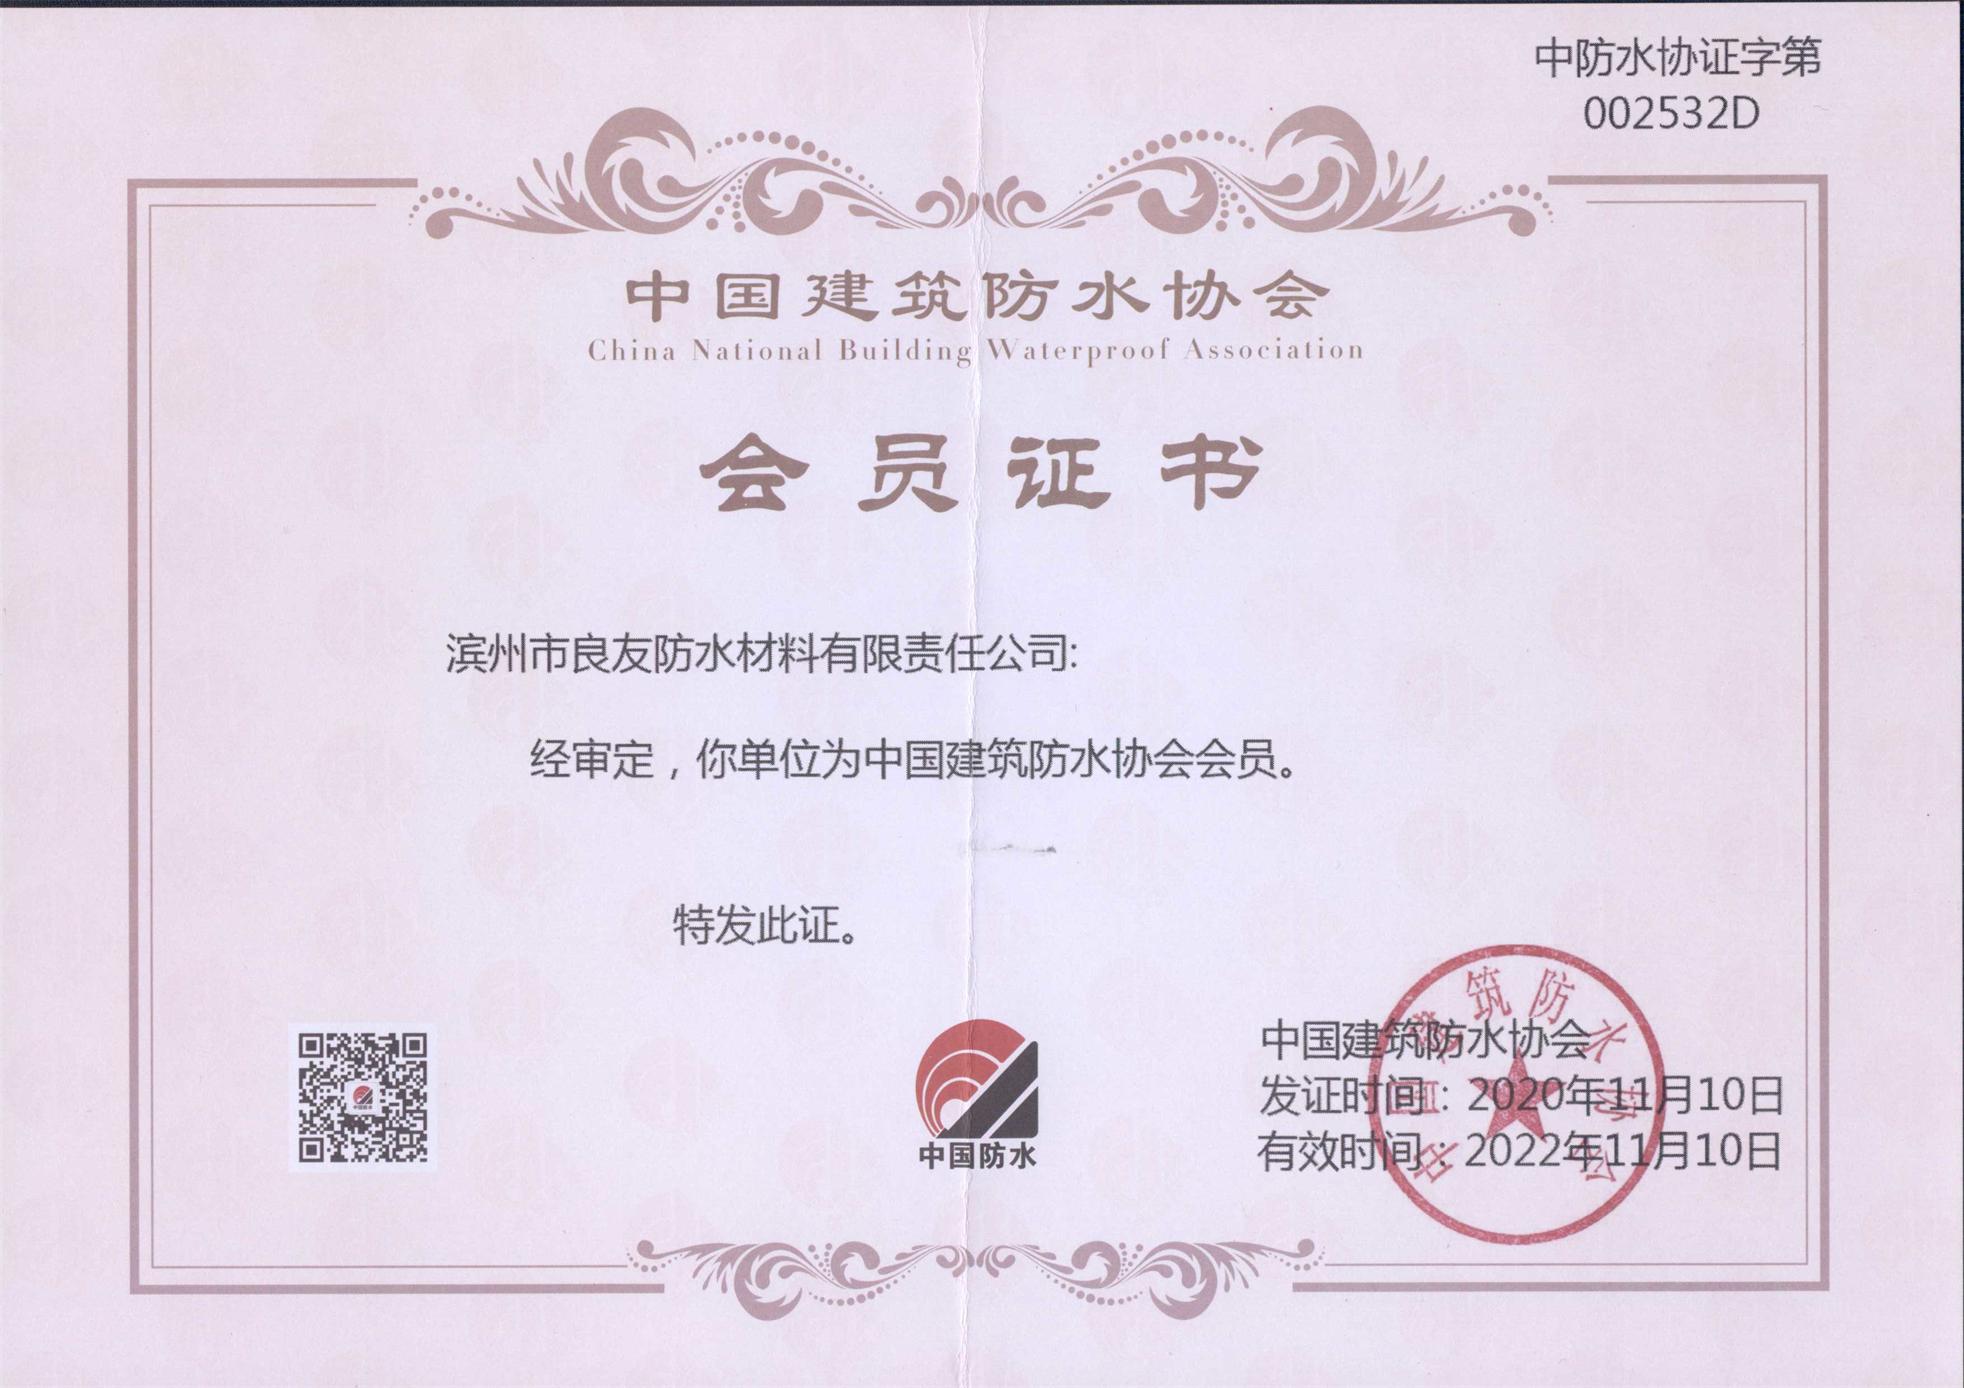 良友防水被审定为中国建筑防水协会会员单位